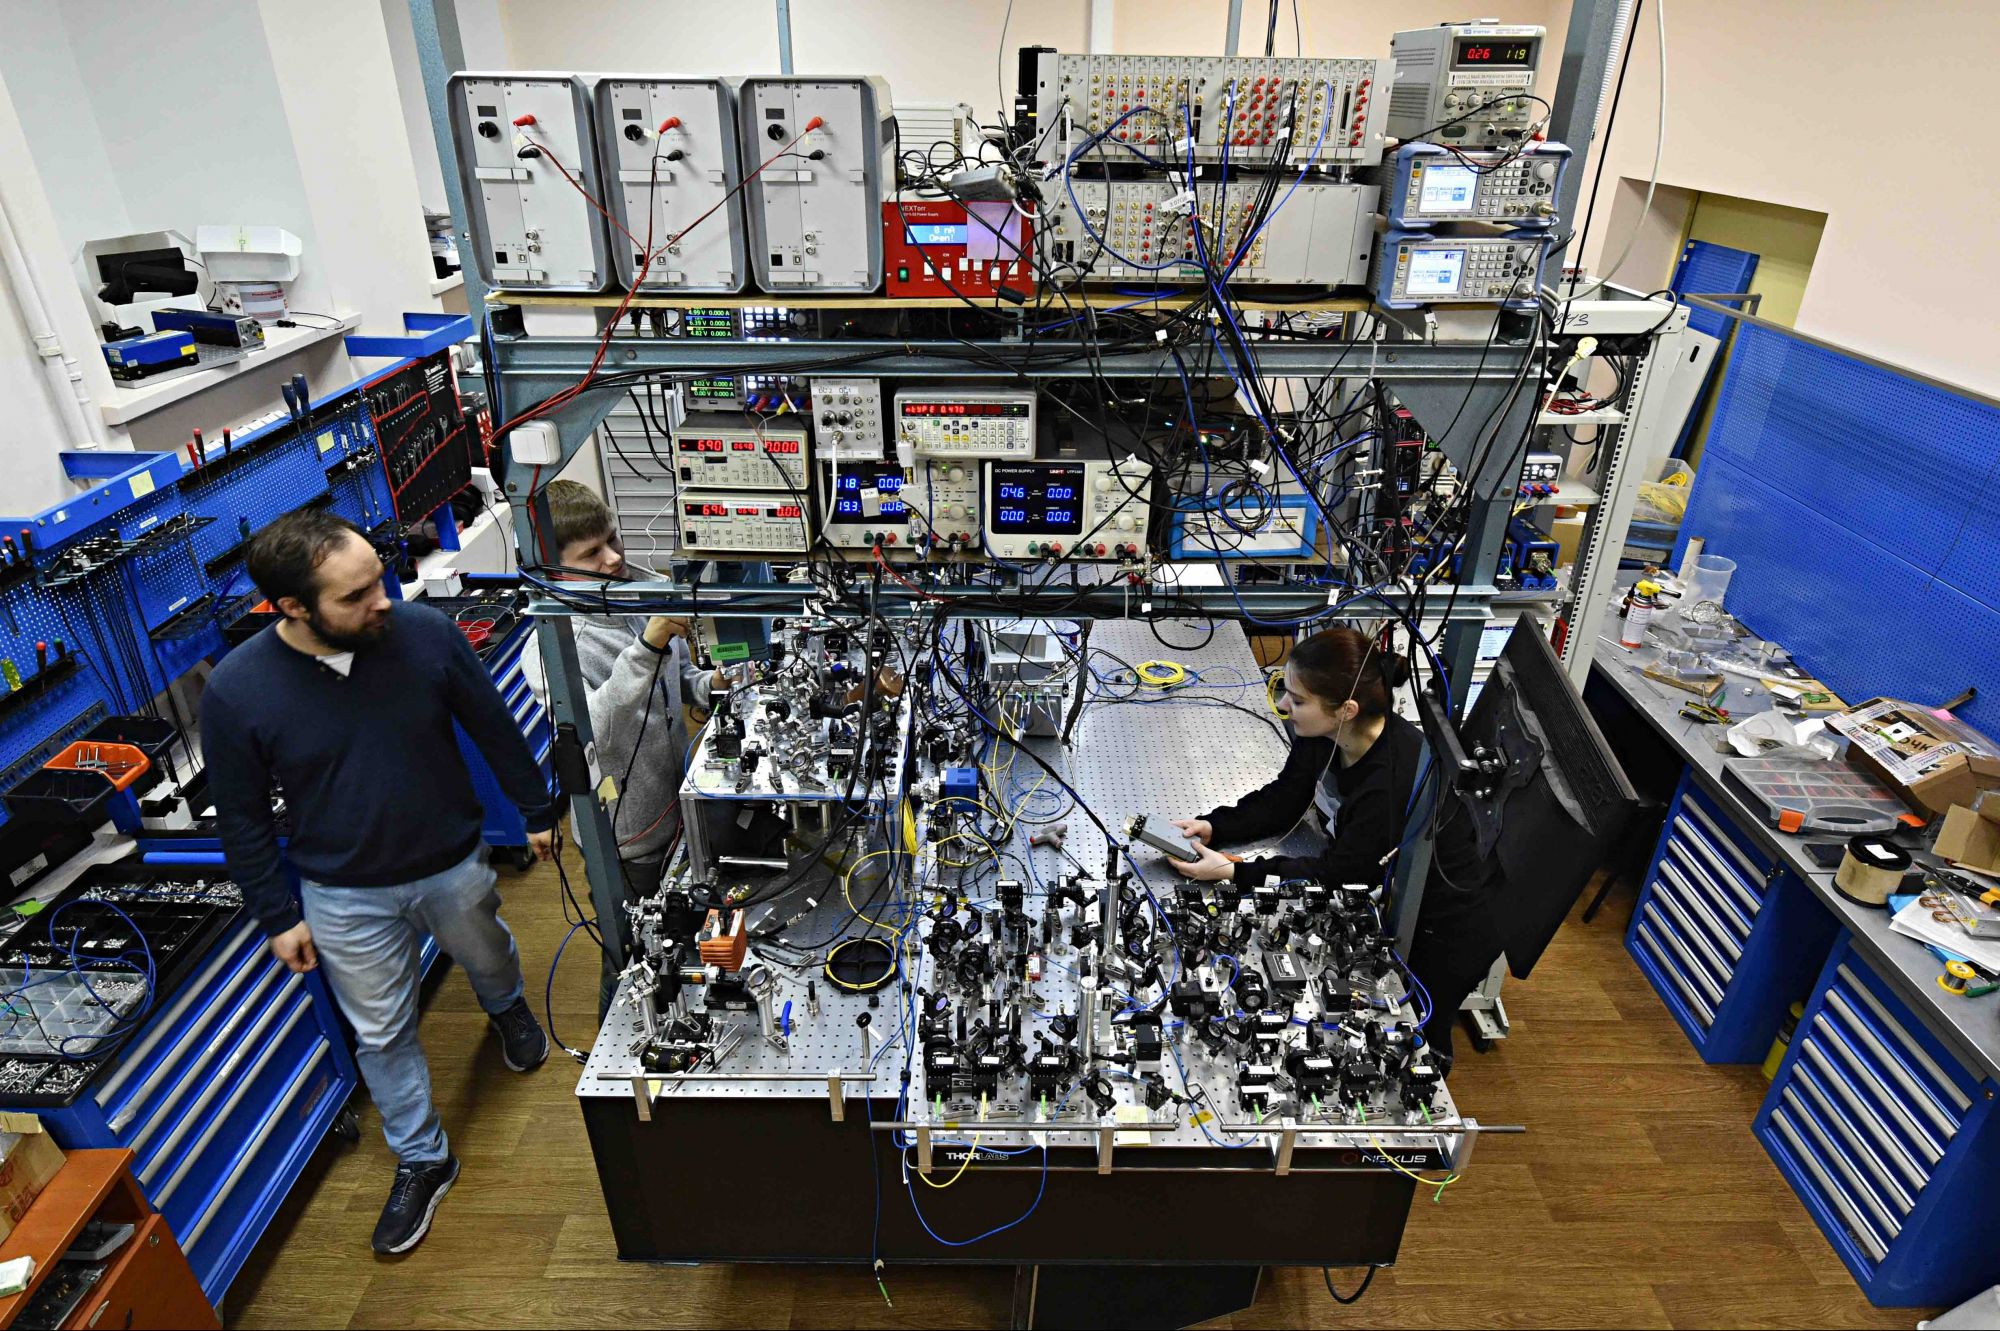 Прототип квантового компьютера на обычный совсем непохож: это оптический стол, позволяющий манипулировать отдельными частицами-кубитами